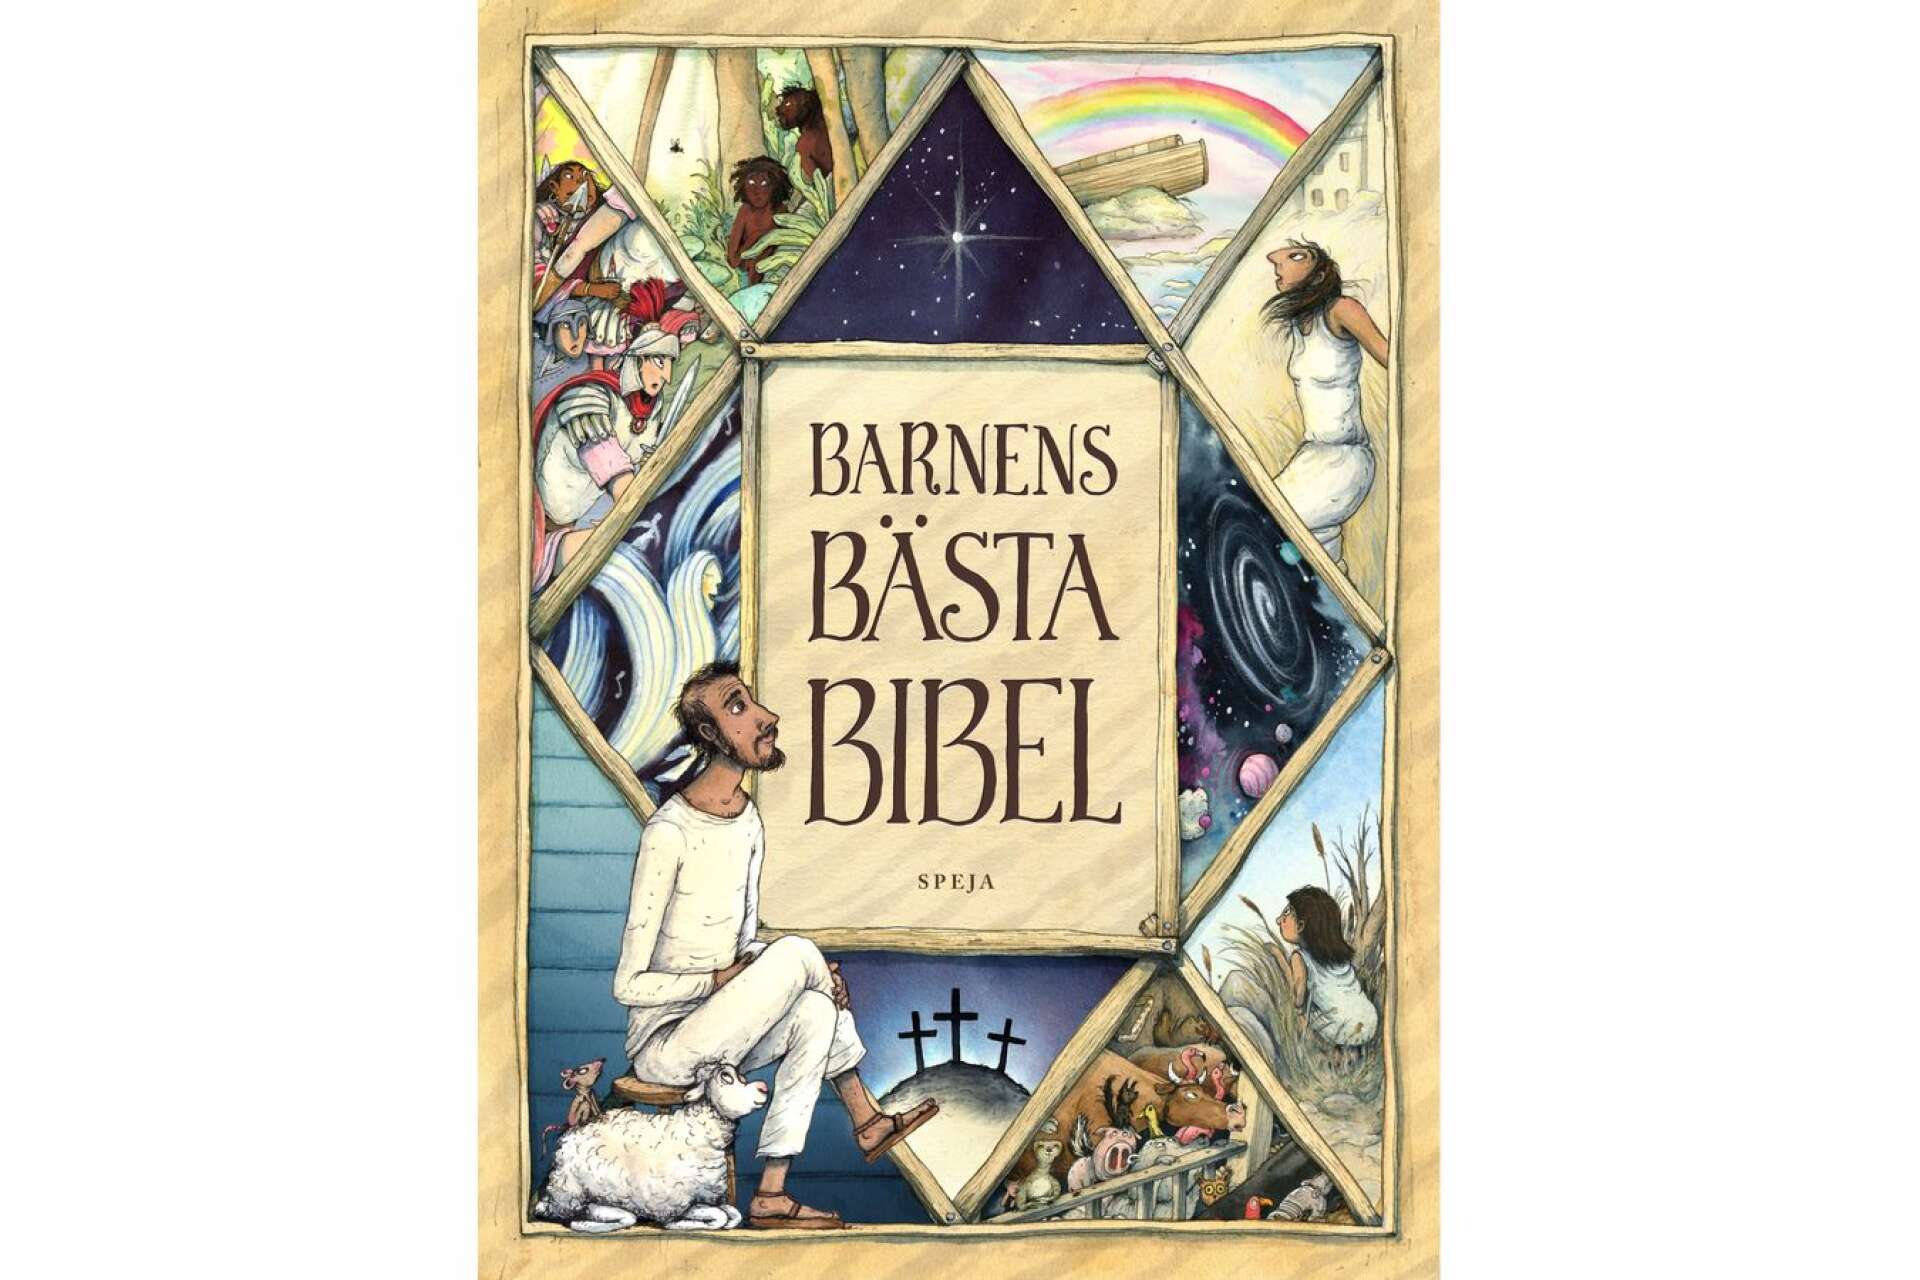 Titel: Barnens bästa bibel Författare: Sören Dalevi Illustratör: Marcus-Gunnar Pettersson Förlag: Speja förlag